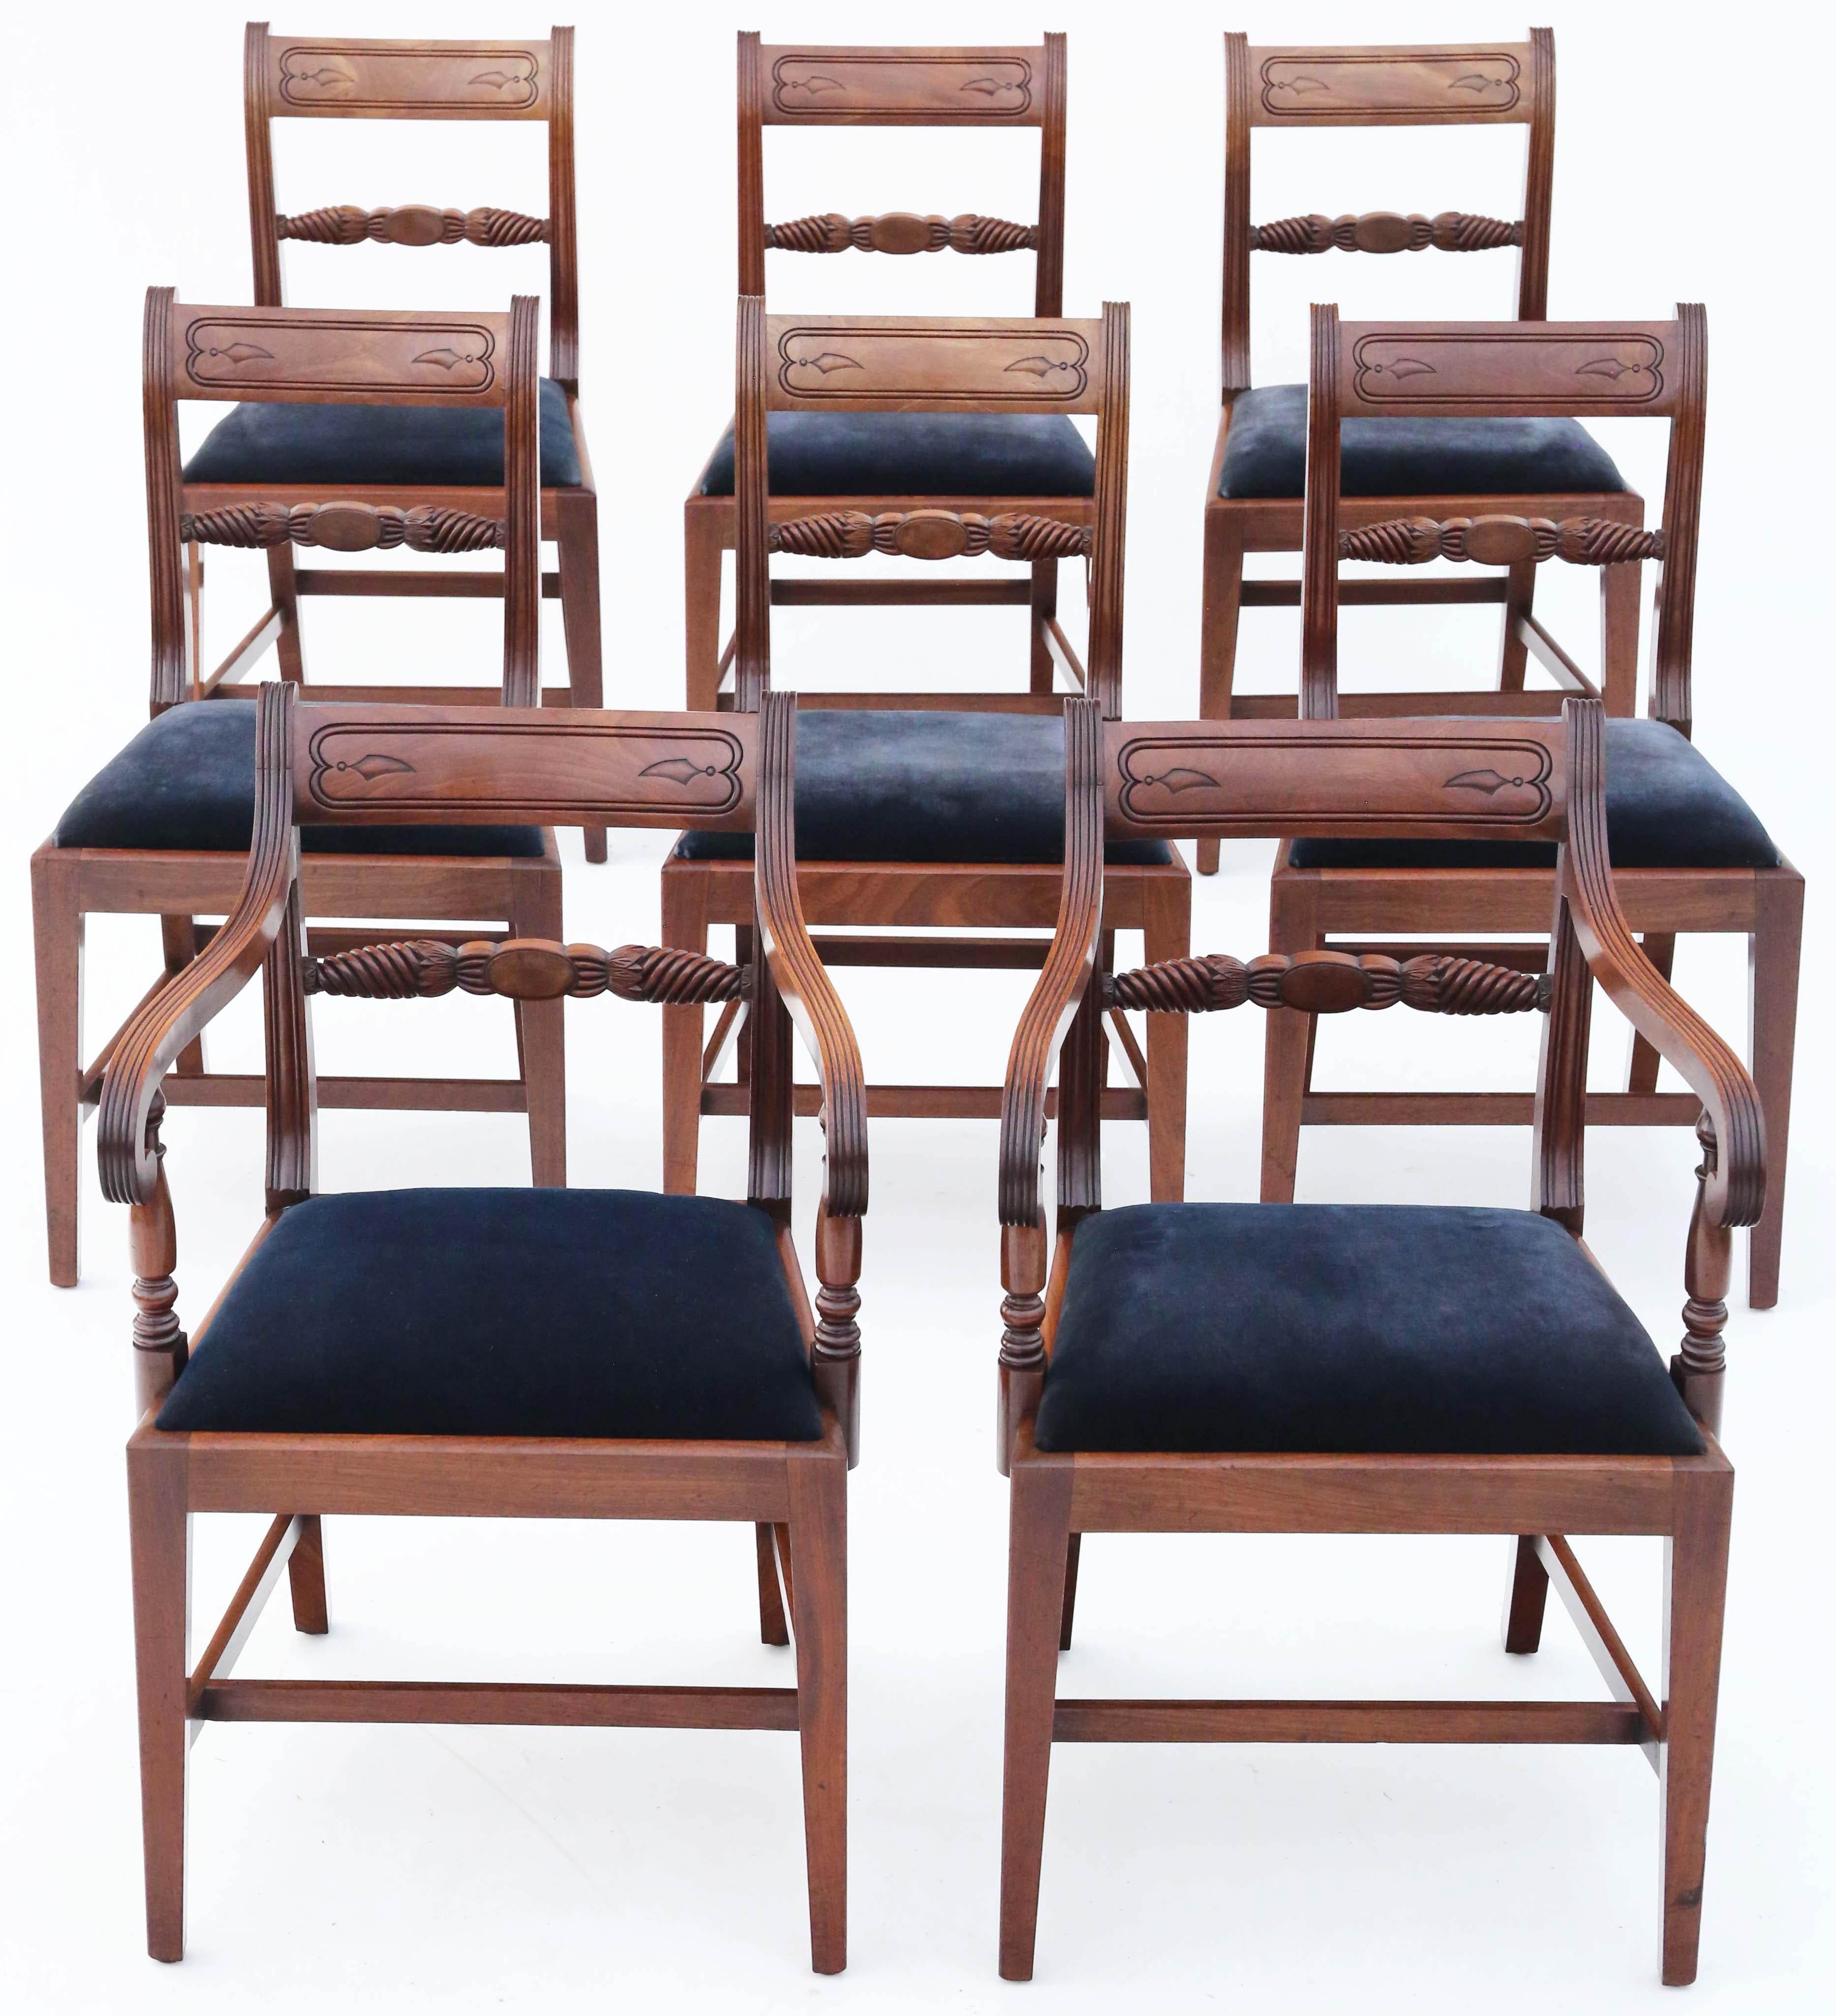 Ensemble de 8 (6 plus 2) chaises de salle à manger en acajou de style Regency du début du 19e siècle, C1830. Très rare, avec un design simple et élégant !

Pas de joints lâches. Récemment restauré à un bon niveau.

La sellerie en velours bleu nuit